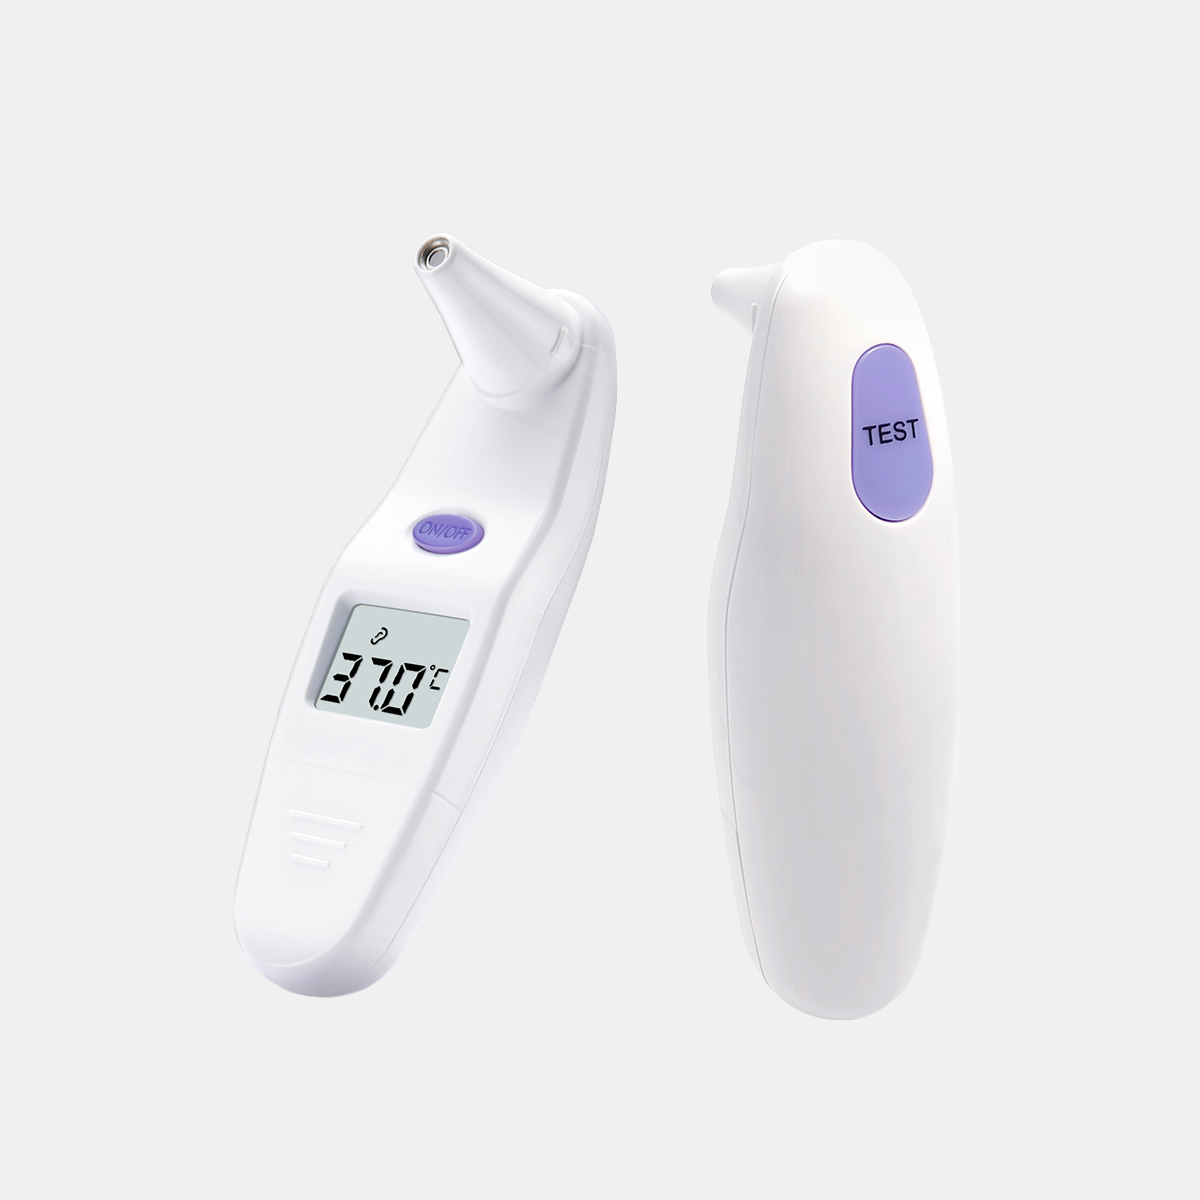 Sejoy Leutik Basal Infrabeureum Ceuli Thermometer pikeun Manusa Demam CE MDR Persetujuan